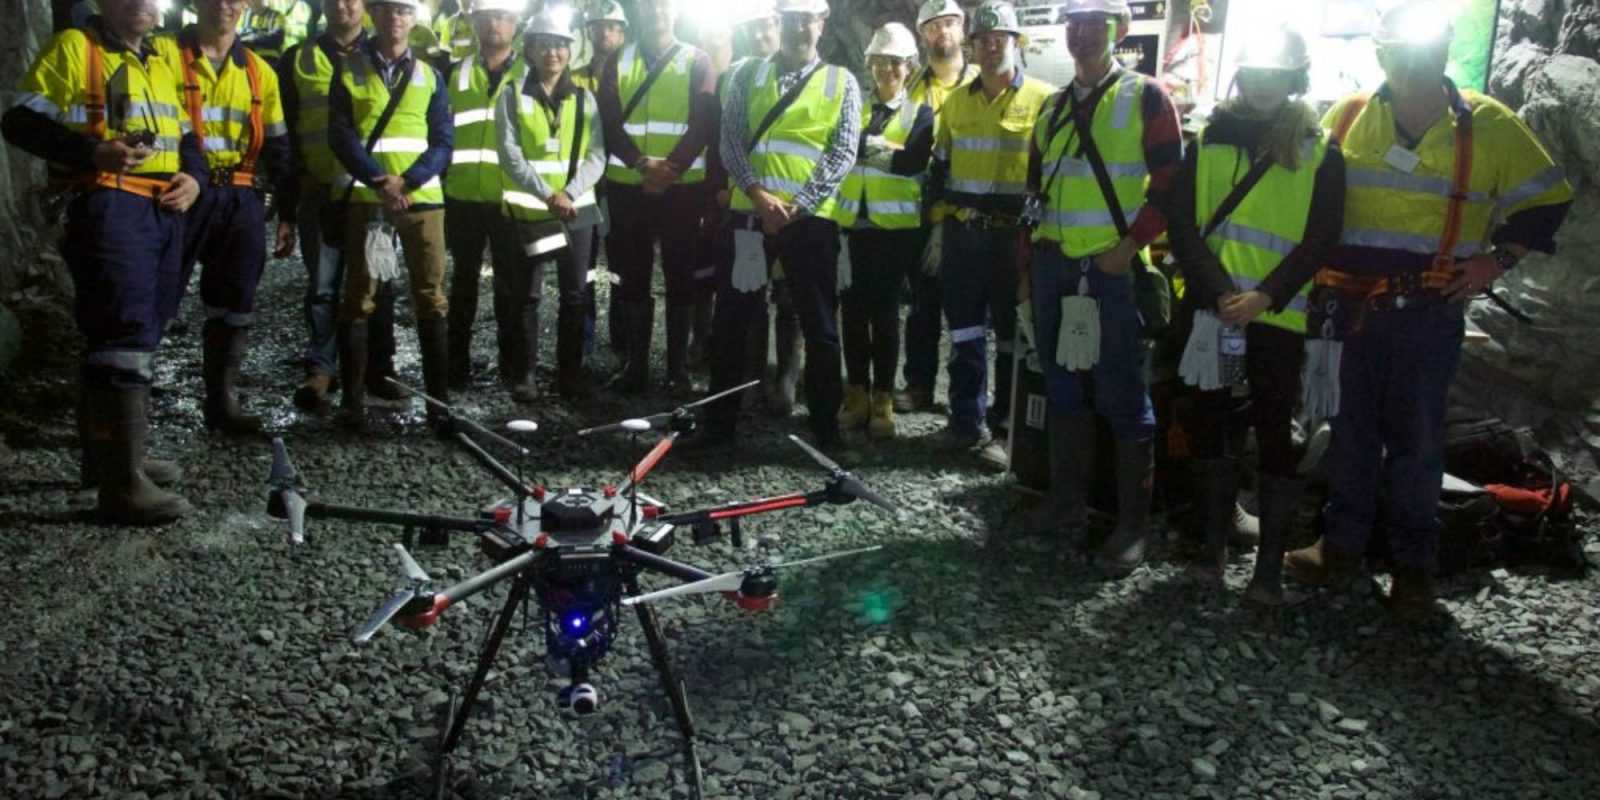 Emesent autonomy underground drones